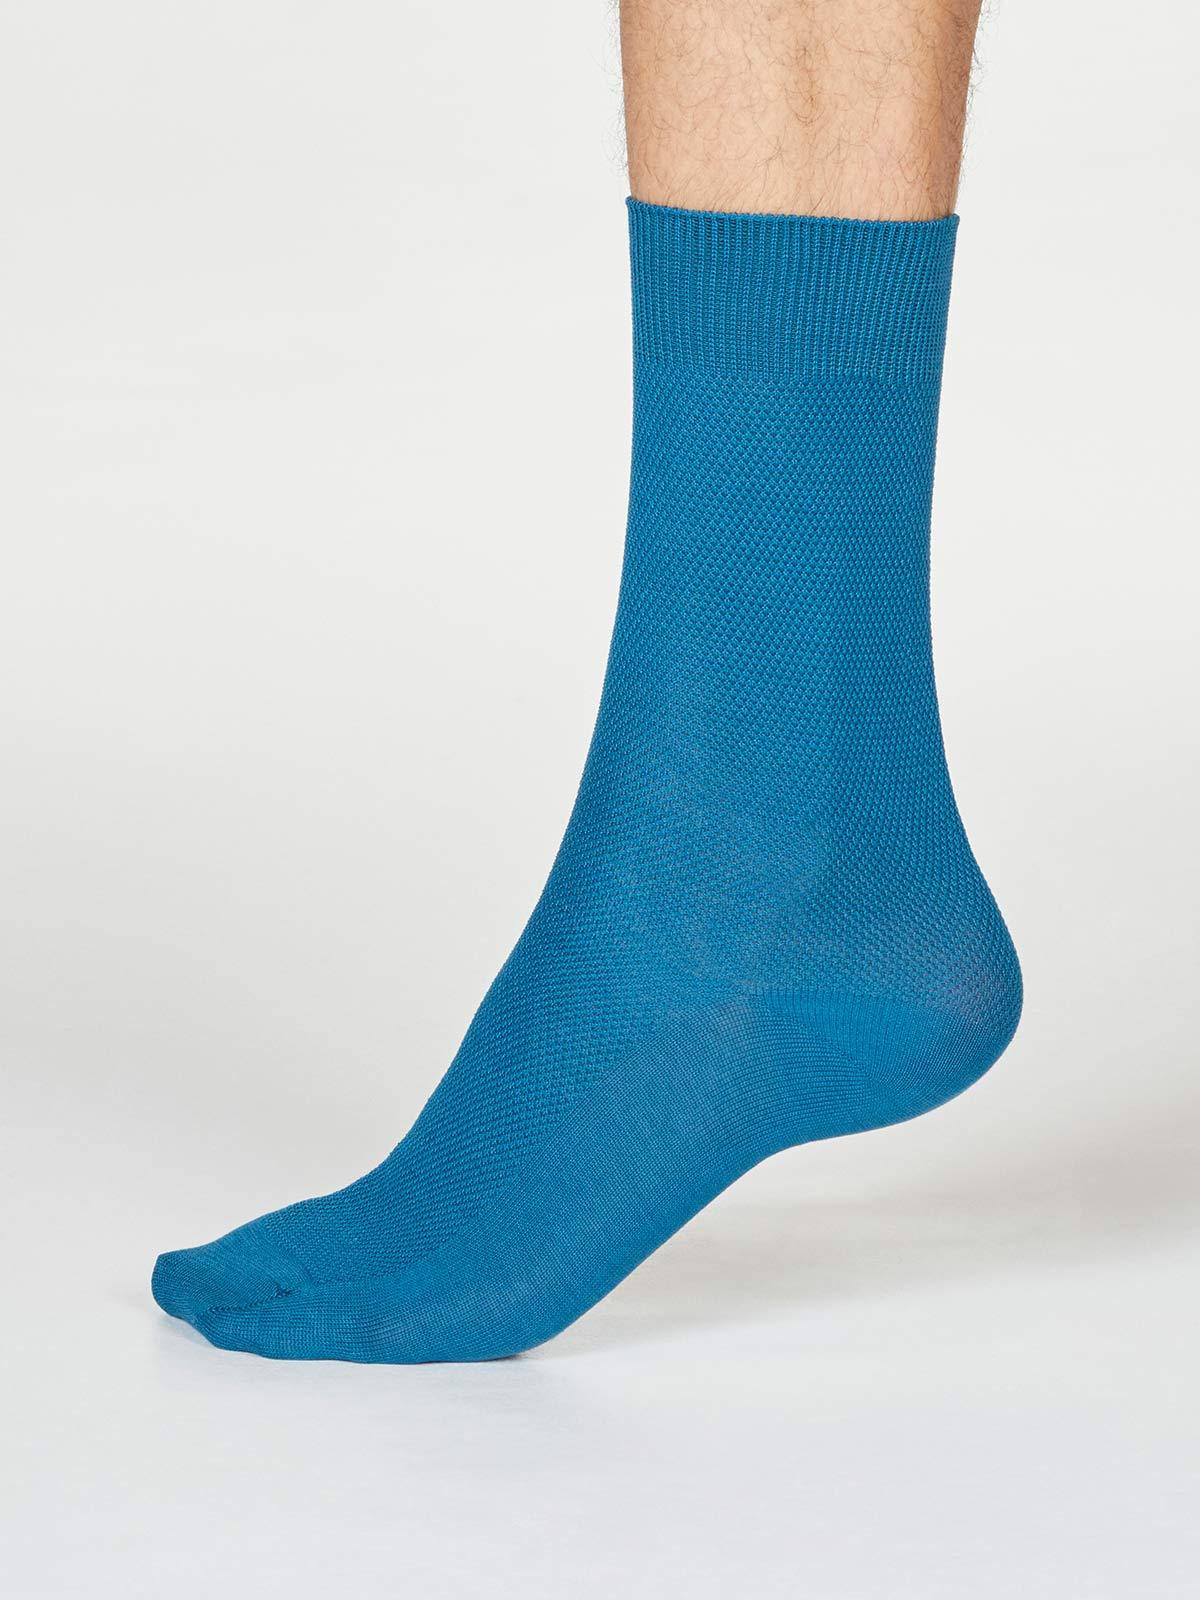 Rodney Dress Socks - Ink Blue - Thought Clothing UK